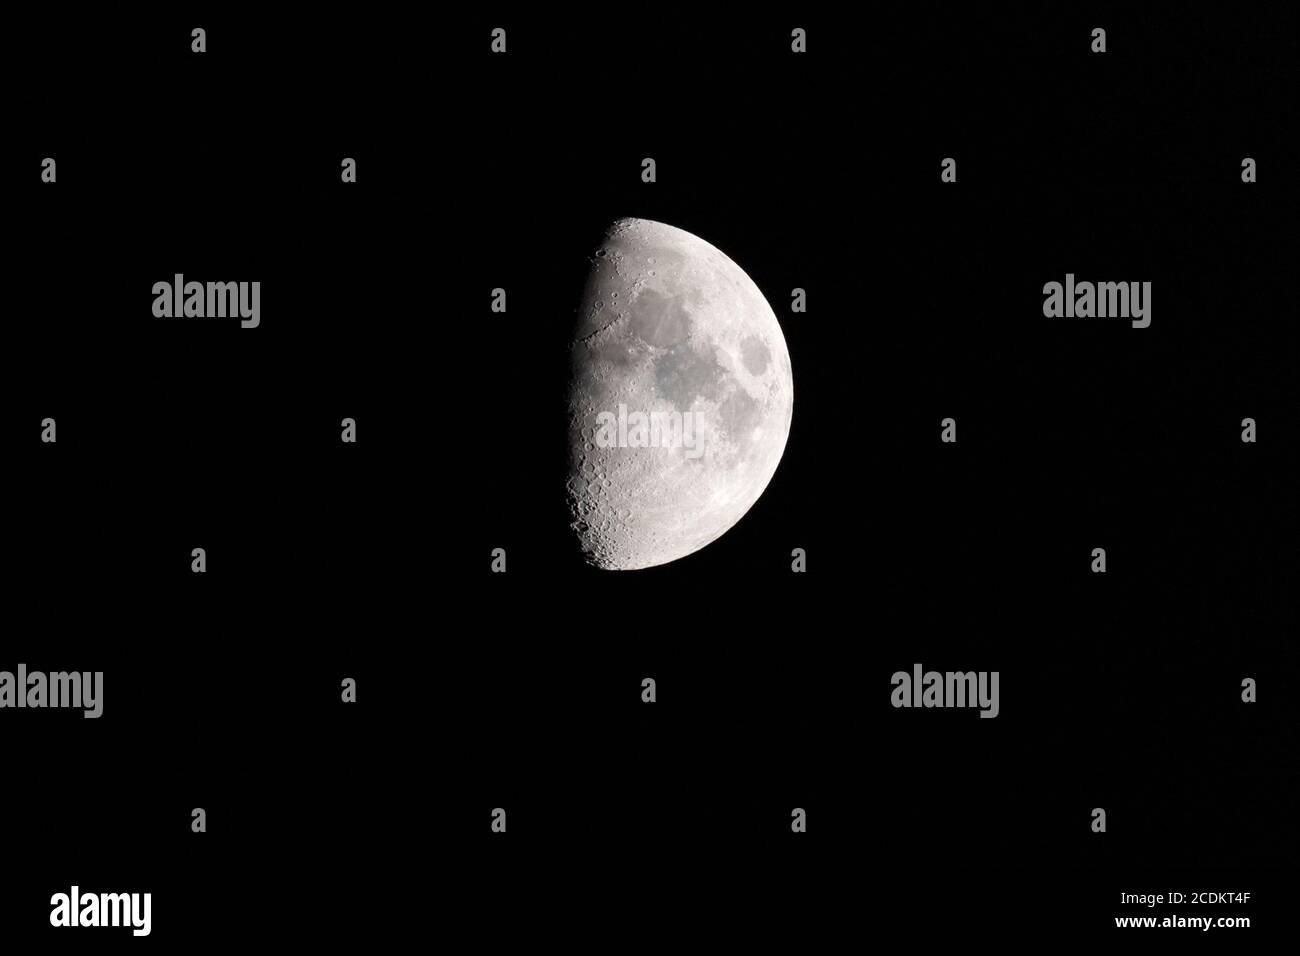 Der Halbmond am Nachthimmel wird zunehmend wachse, wobei die Terminatorlinie Einschlagskrater und Schatten zeigt Stockfoto